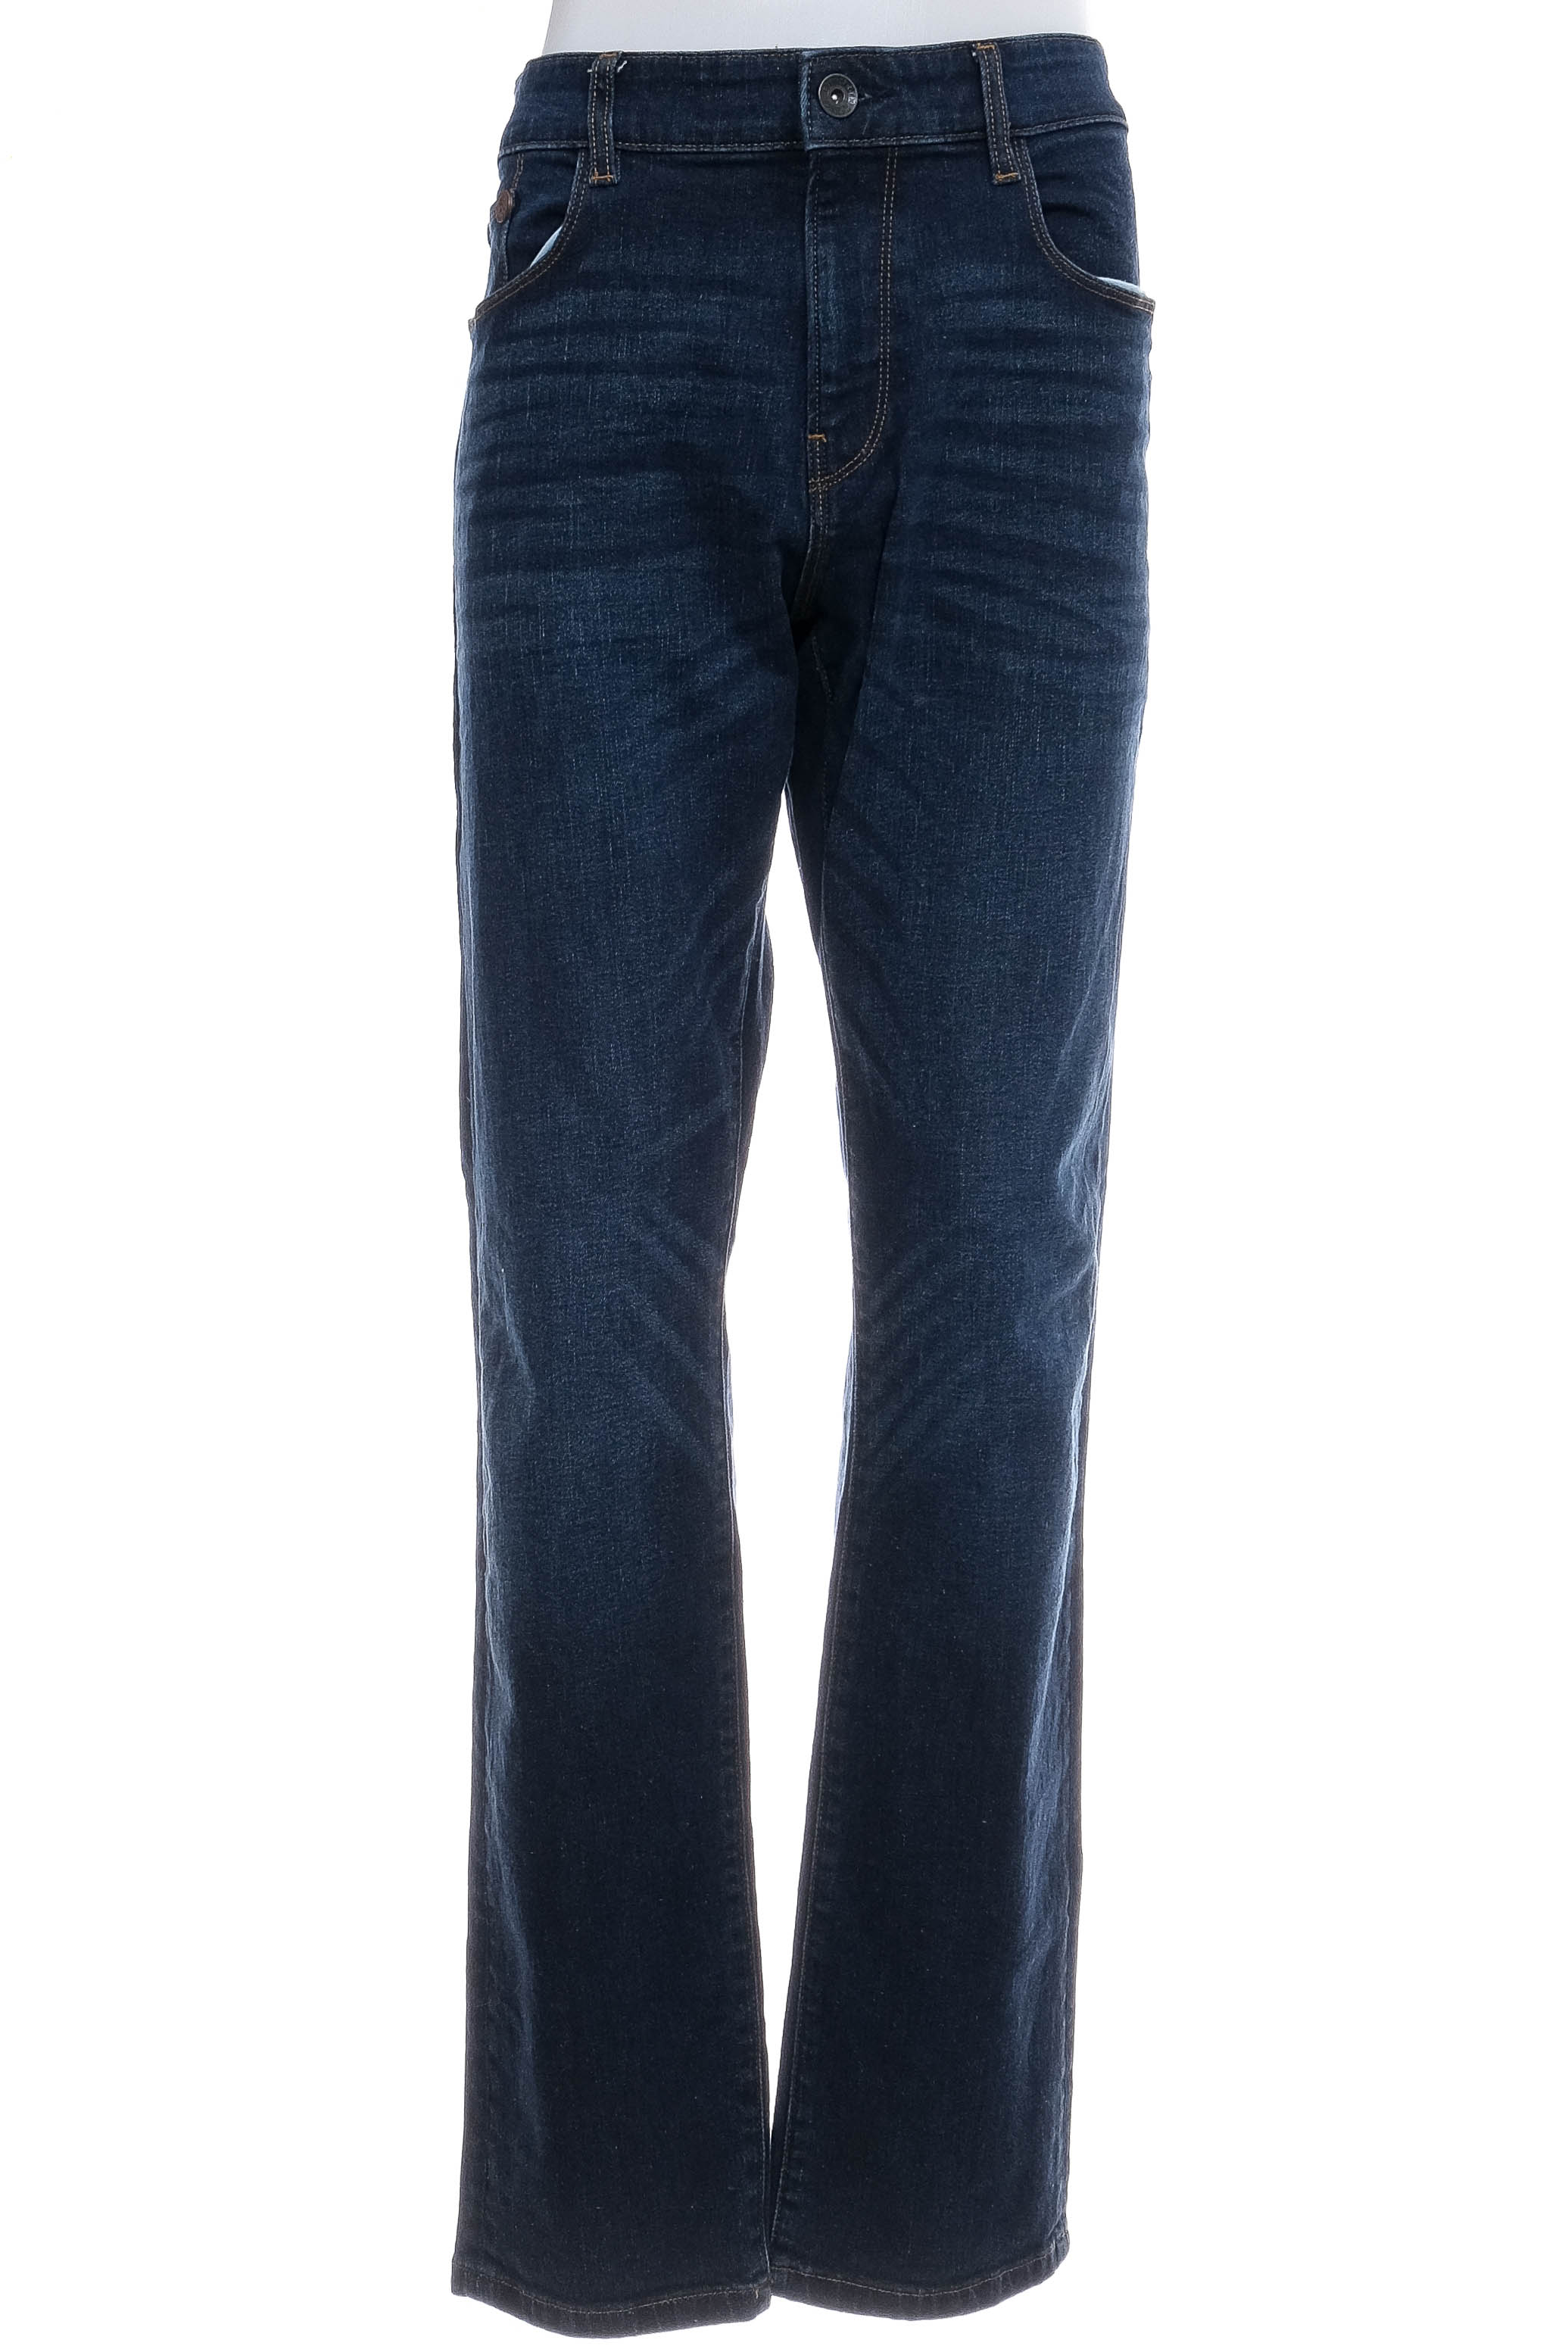 Jeans pentru bărbăți - ESPRIT - 0